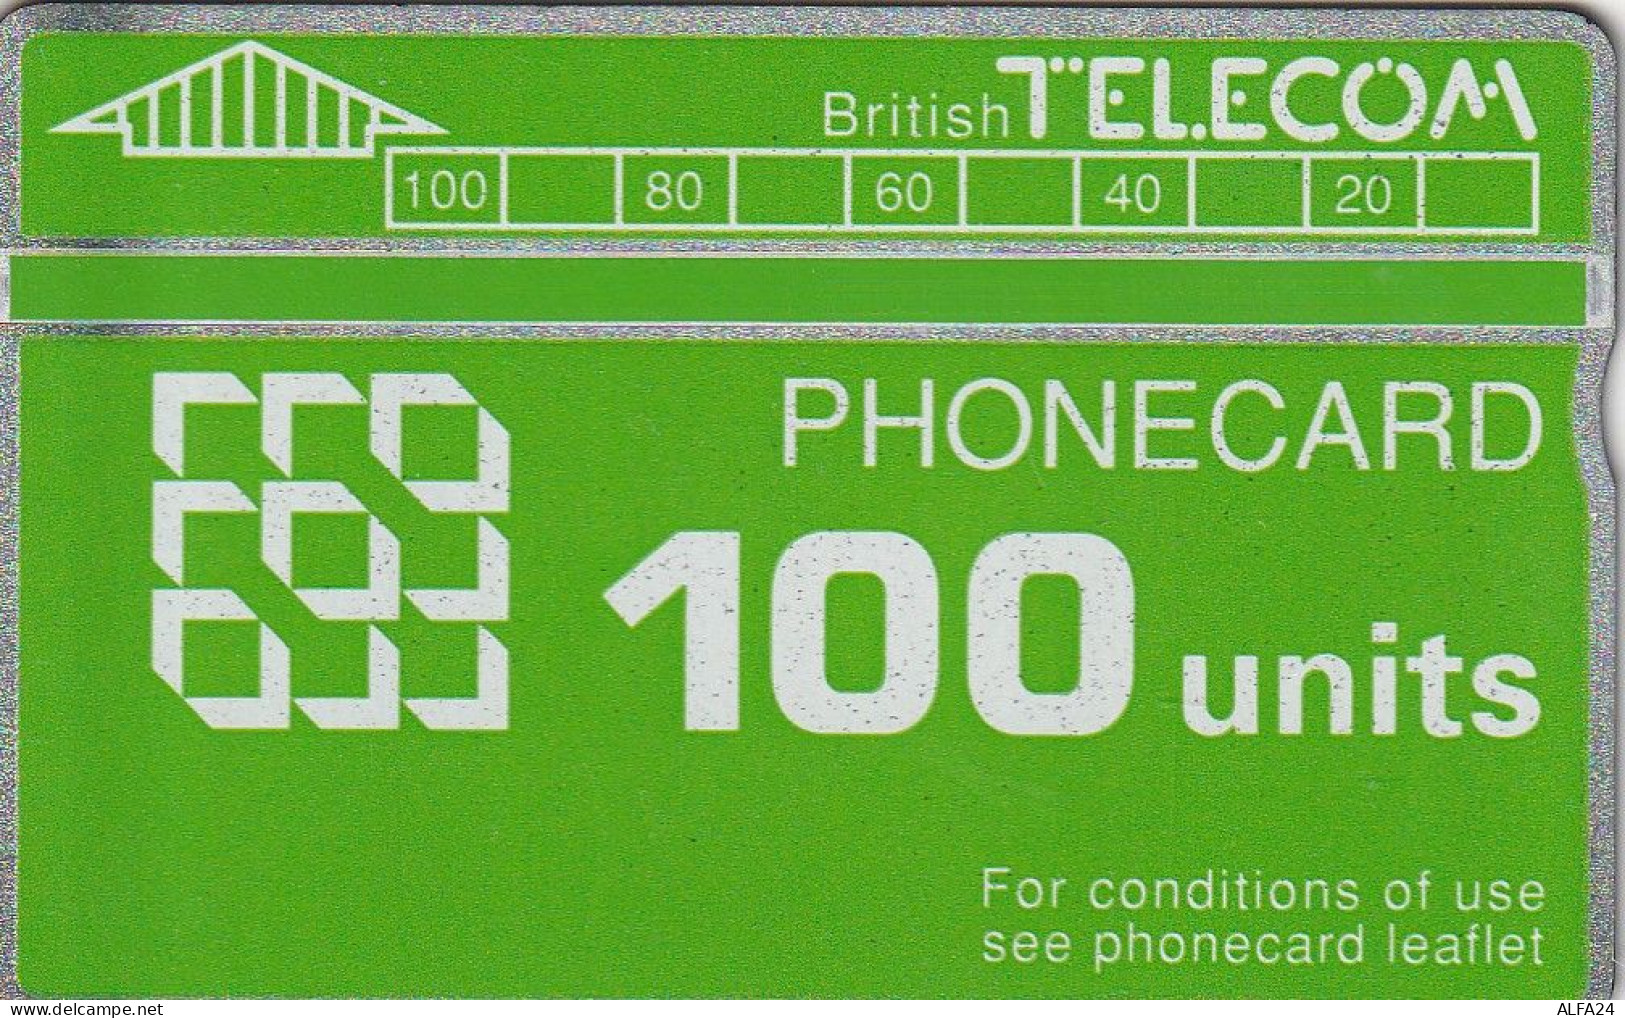 PHONE CARD UK LG (CZ1725 - BT Emissions Générales